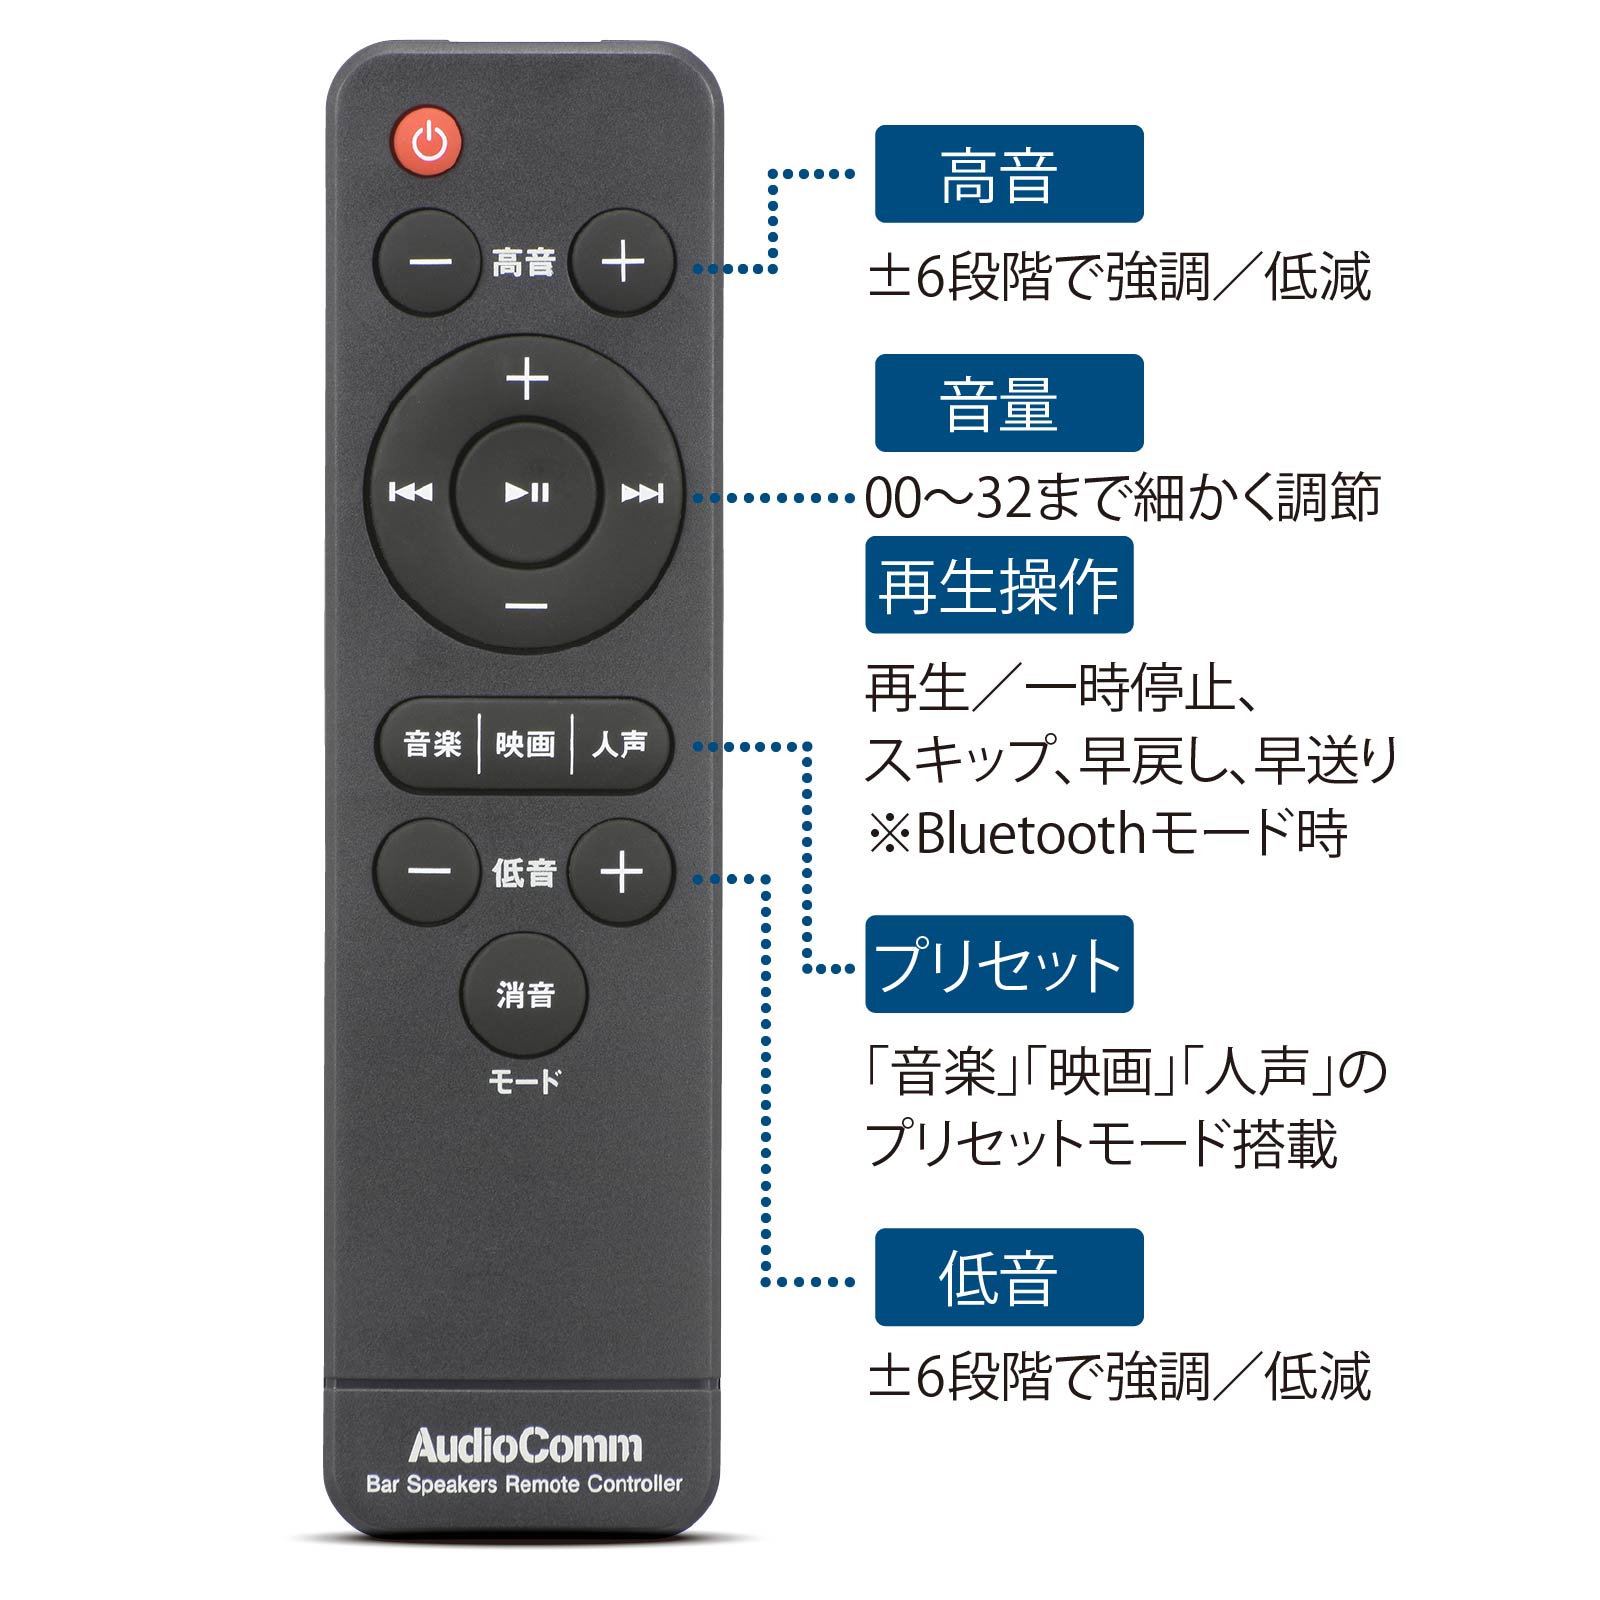 AudioComm バースピーカー L｜ASP-SB2040N 03-2973 オーム電機 | e-プライス